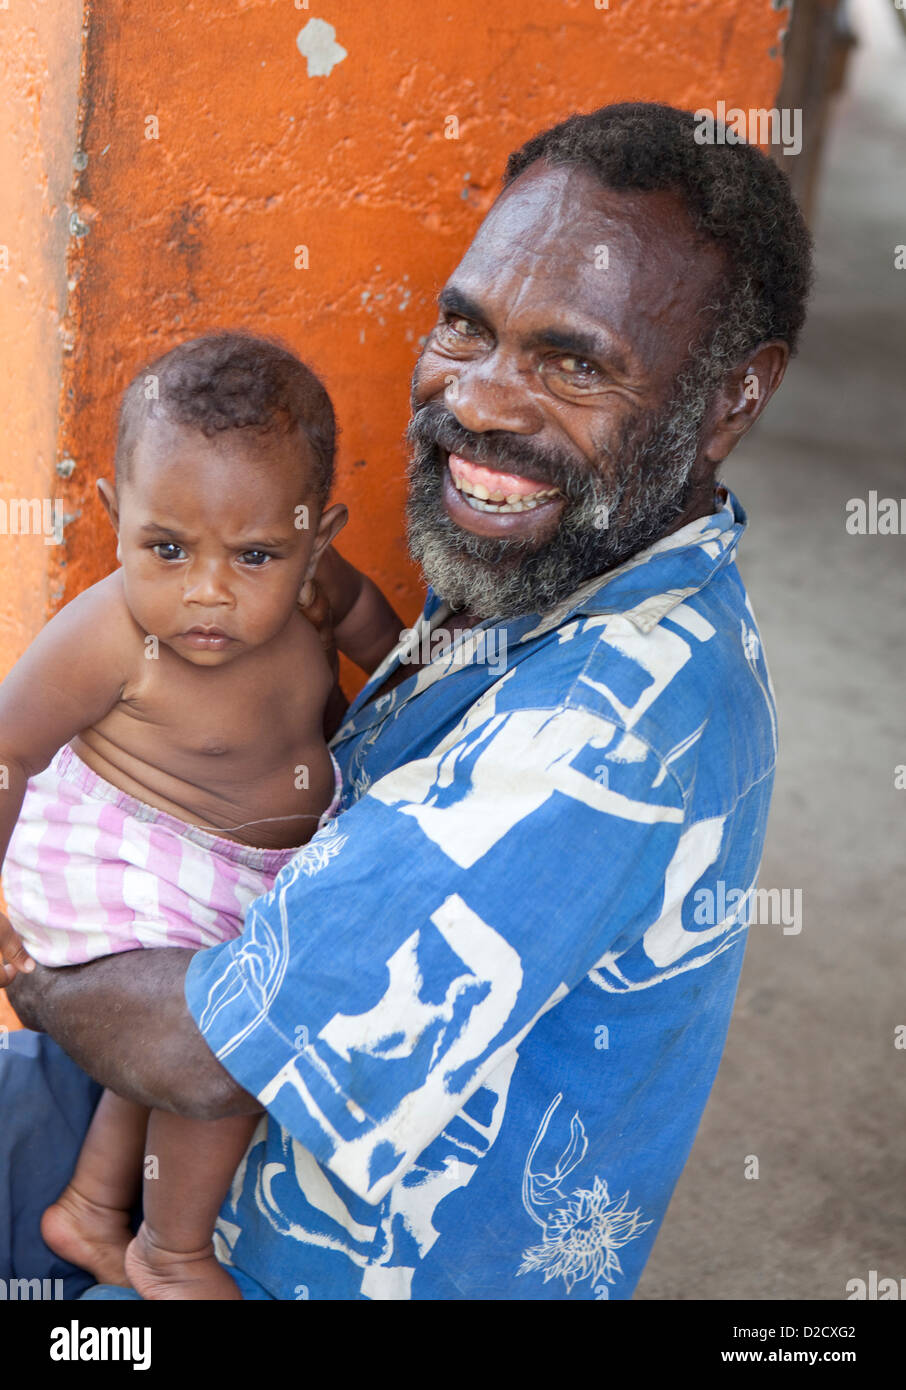 Grand-père avec son petit-fils, du marché, de l'île de Tanna, Vanuatu Pacifique Sud Banque D'Images